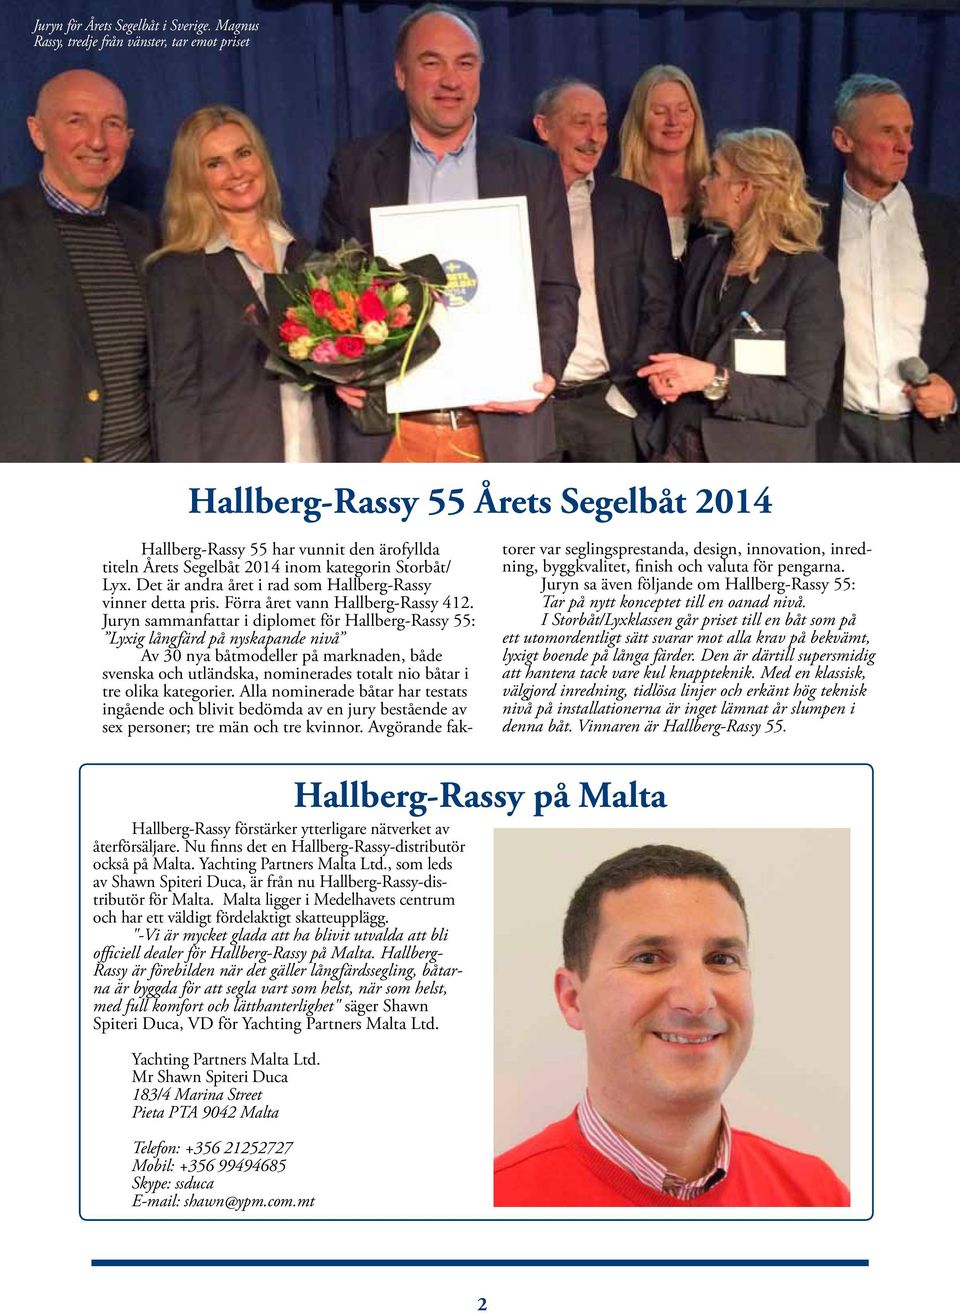 Det är andra året i rad som Hallberg-Rassy vinner detta pris. Förra året vann Hallberg-Rassy 412.